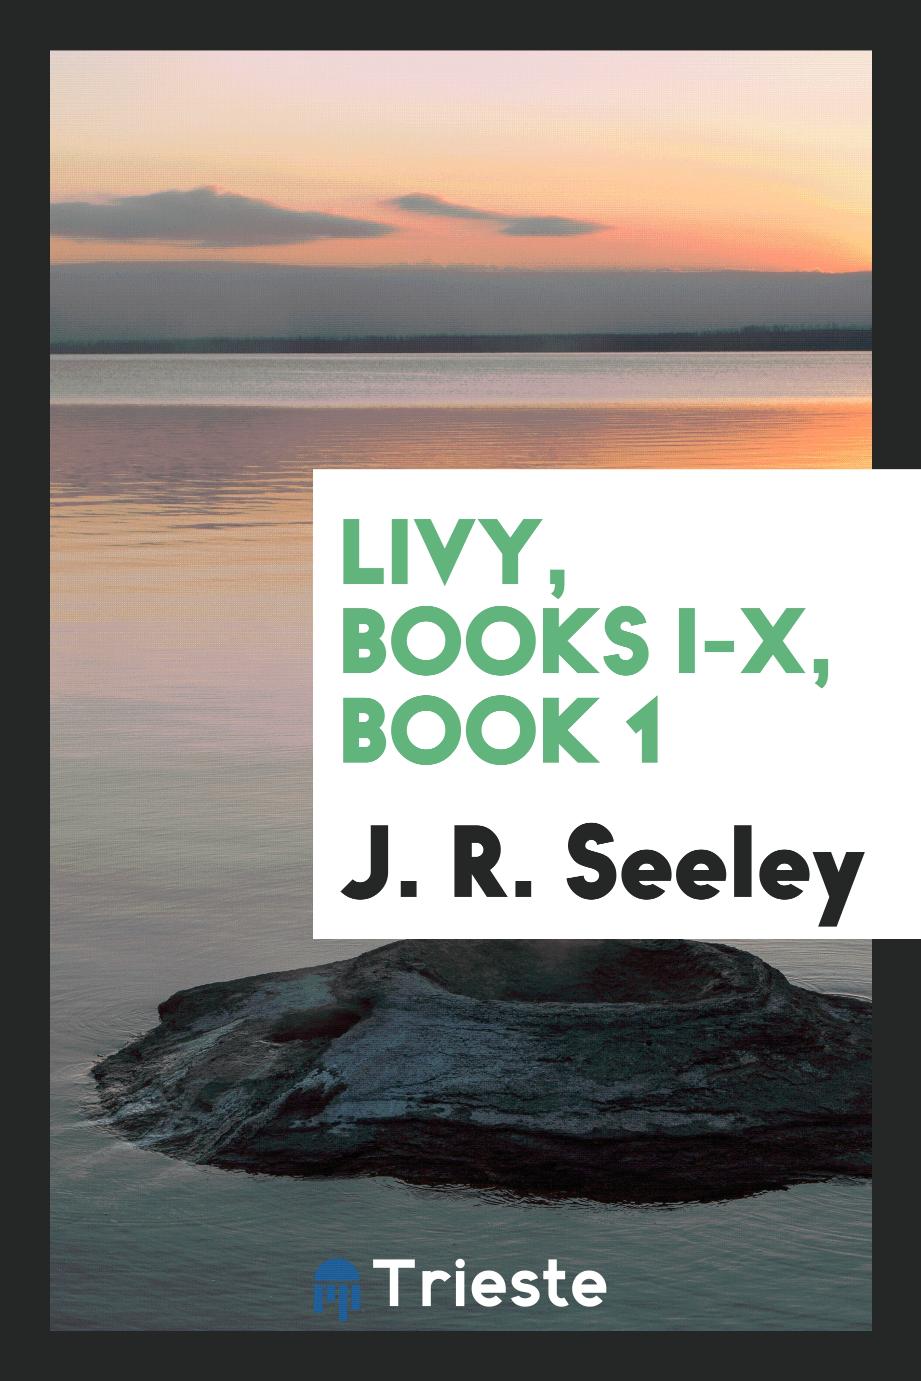 Livy, books I-X, Book 1